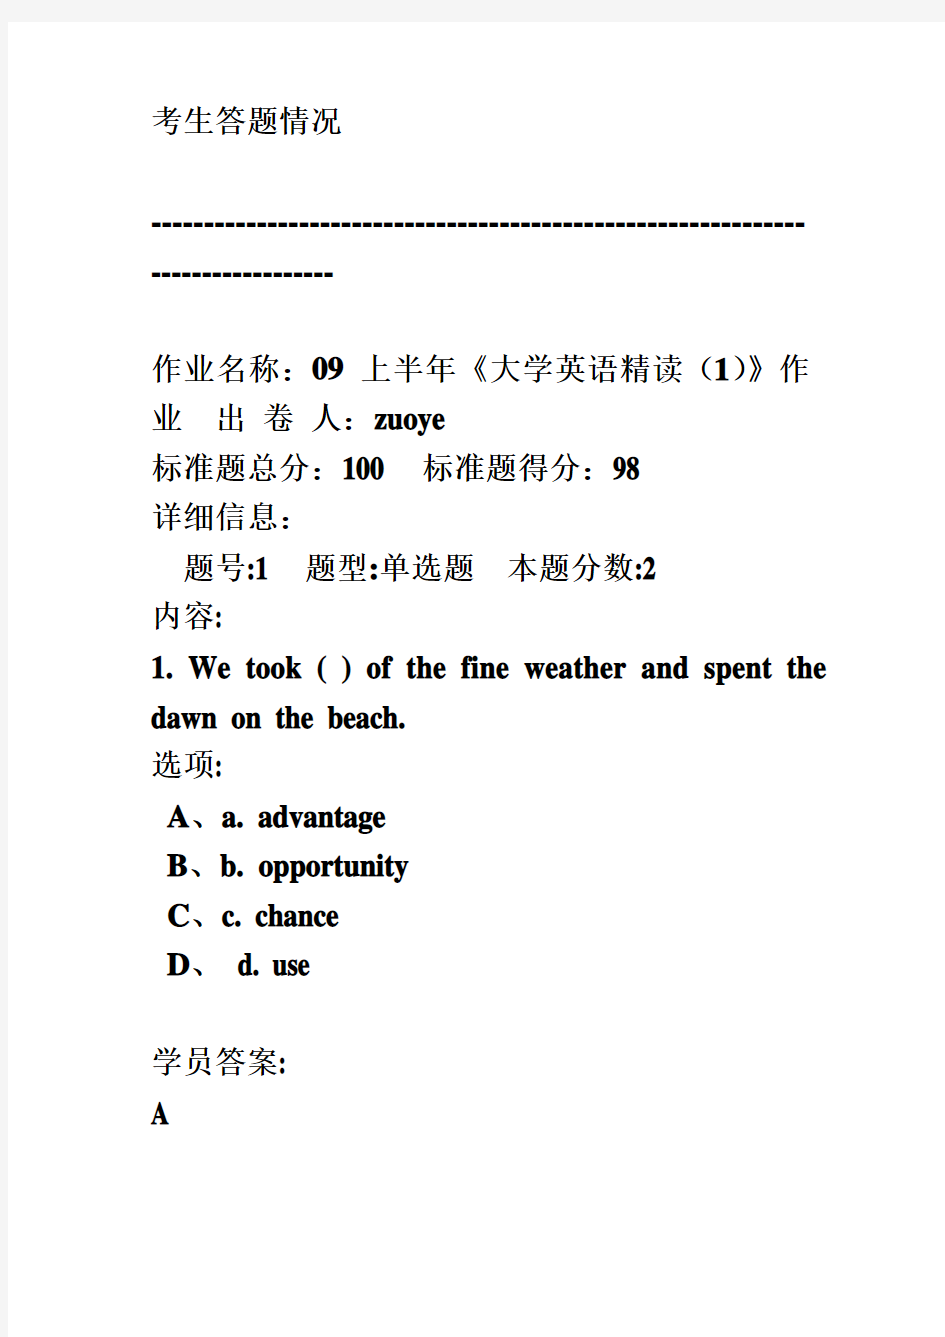 华南师范远程教育大专计算大学英语精读(1)作业答案96分